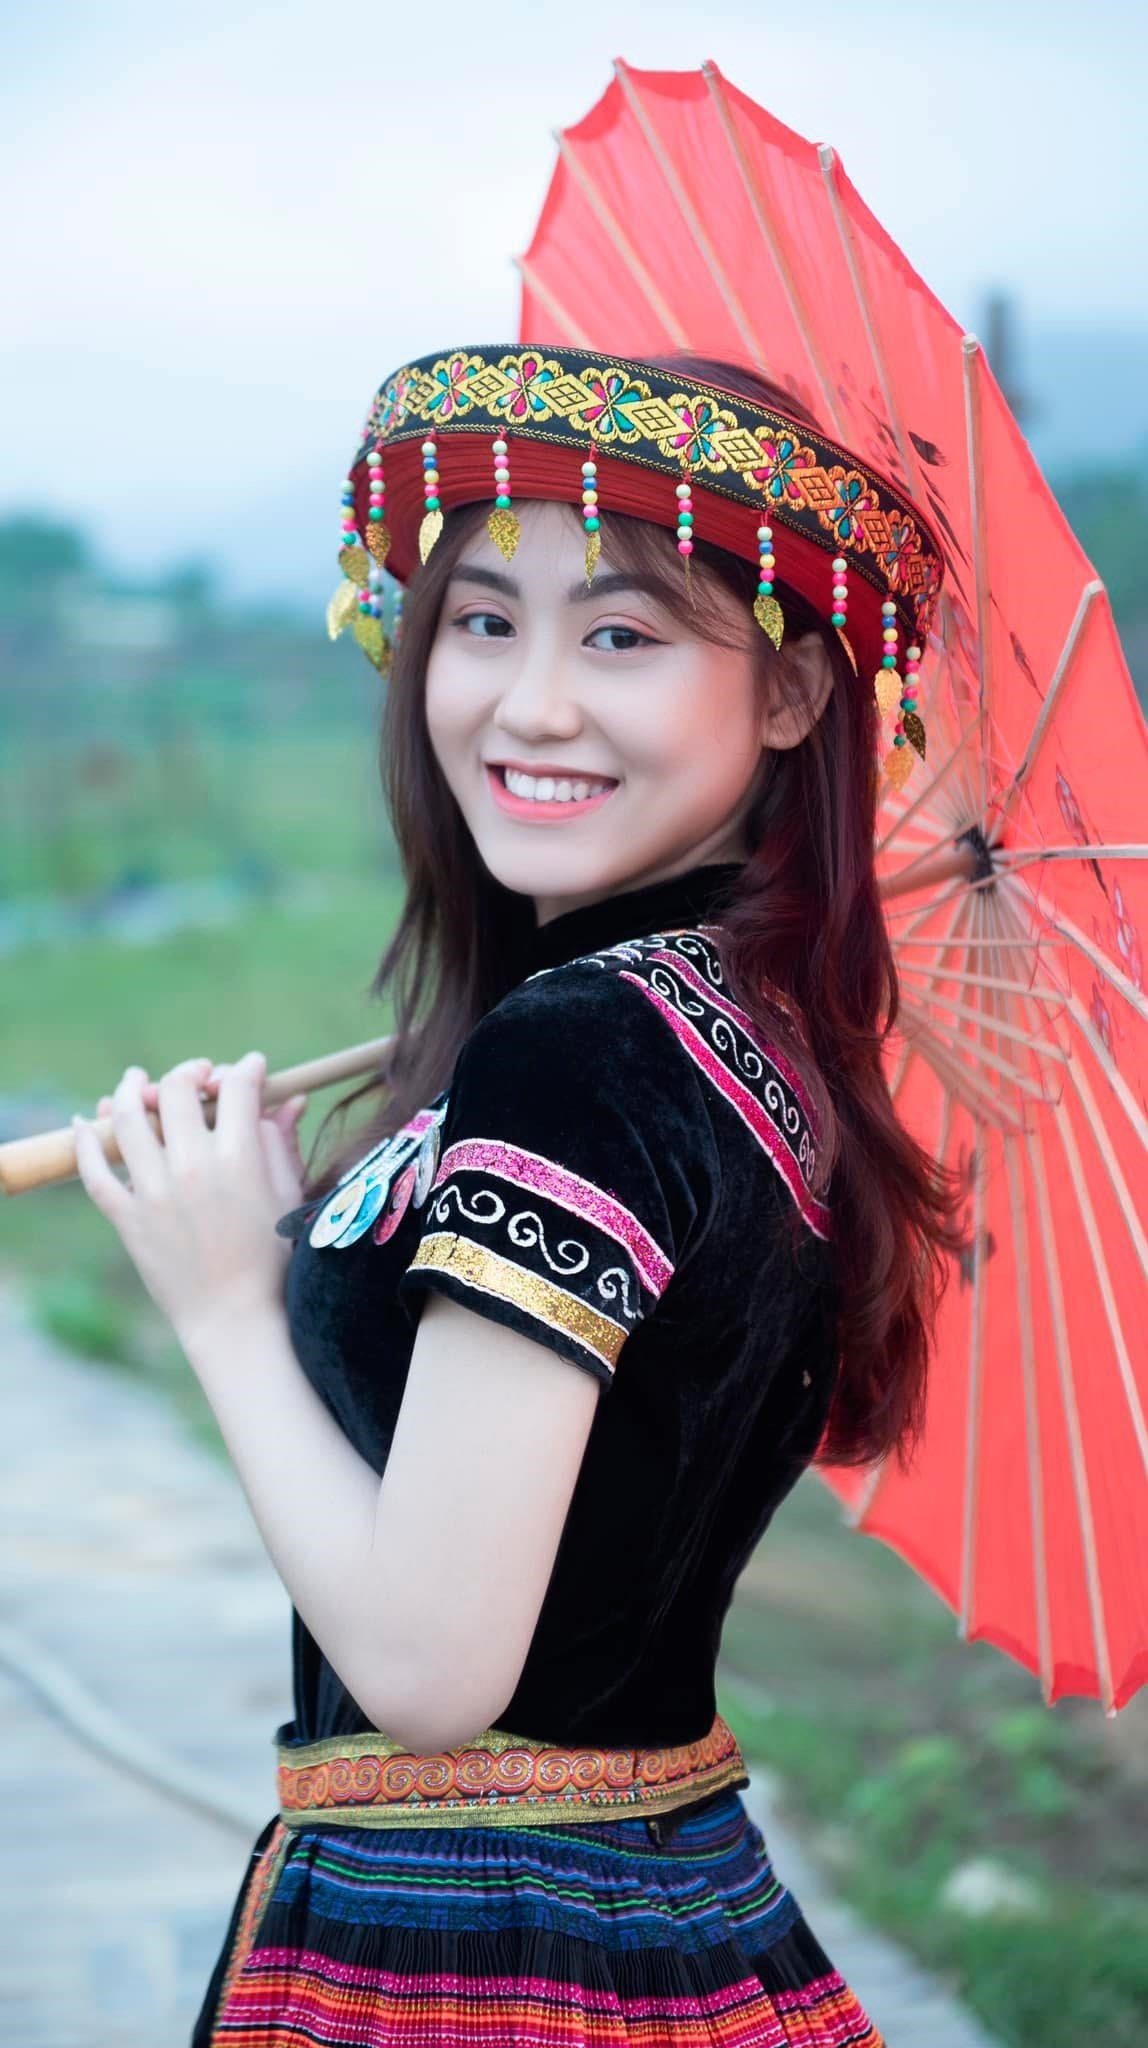 Nàng hậu sinh ra và lớn lên ở quê hương Quảng Nam và hiện đang là sinh viên trường Đại học Duy Tân (TP. Đà Nẵng), đồng thời cô cũng đang hoạt động trong lĩnh vực người mẫu.